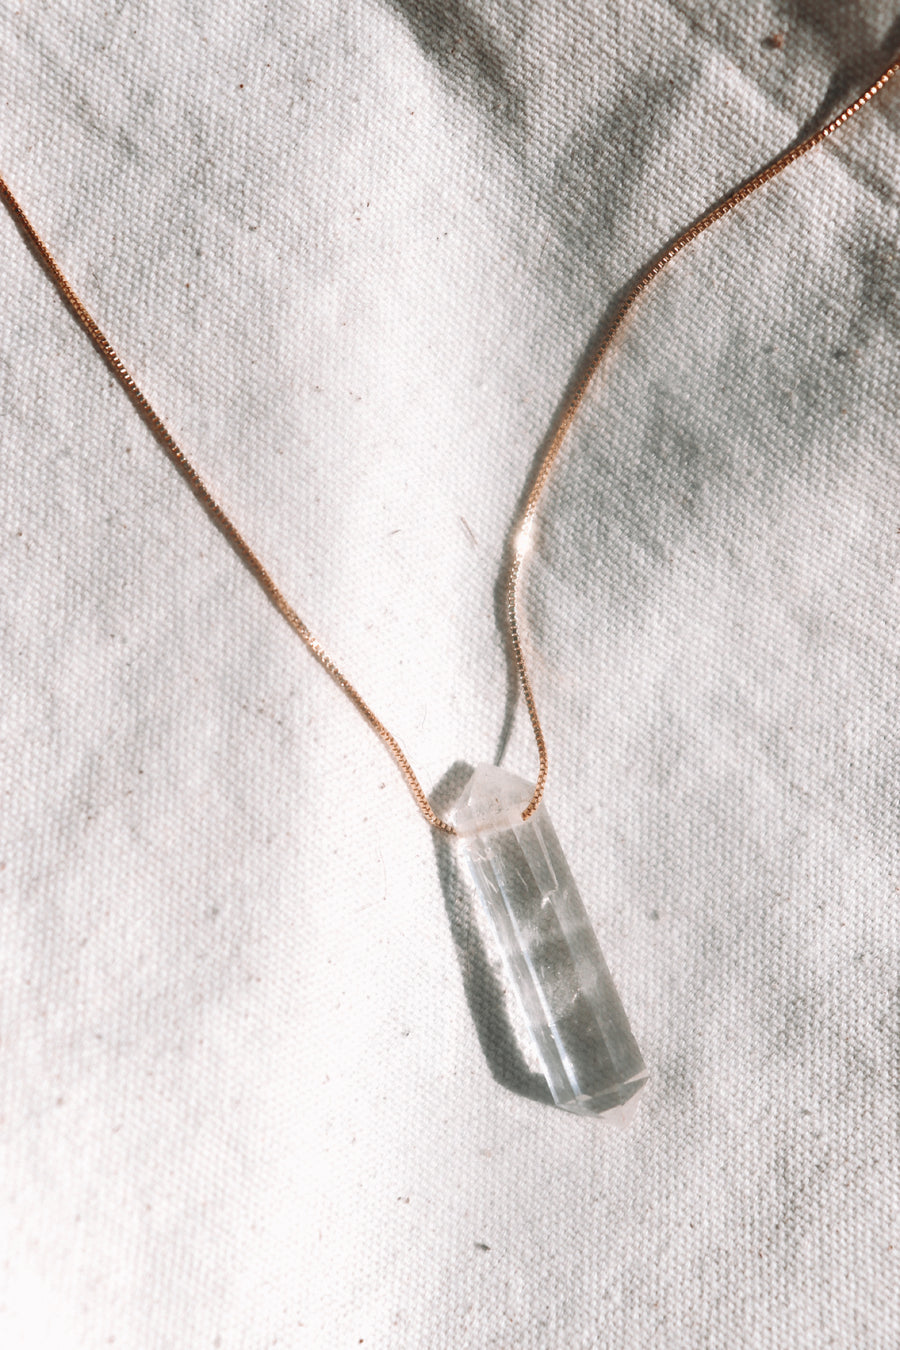 Goddess amulet | Clear quartz point necklace